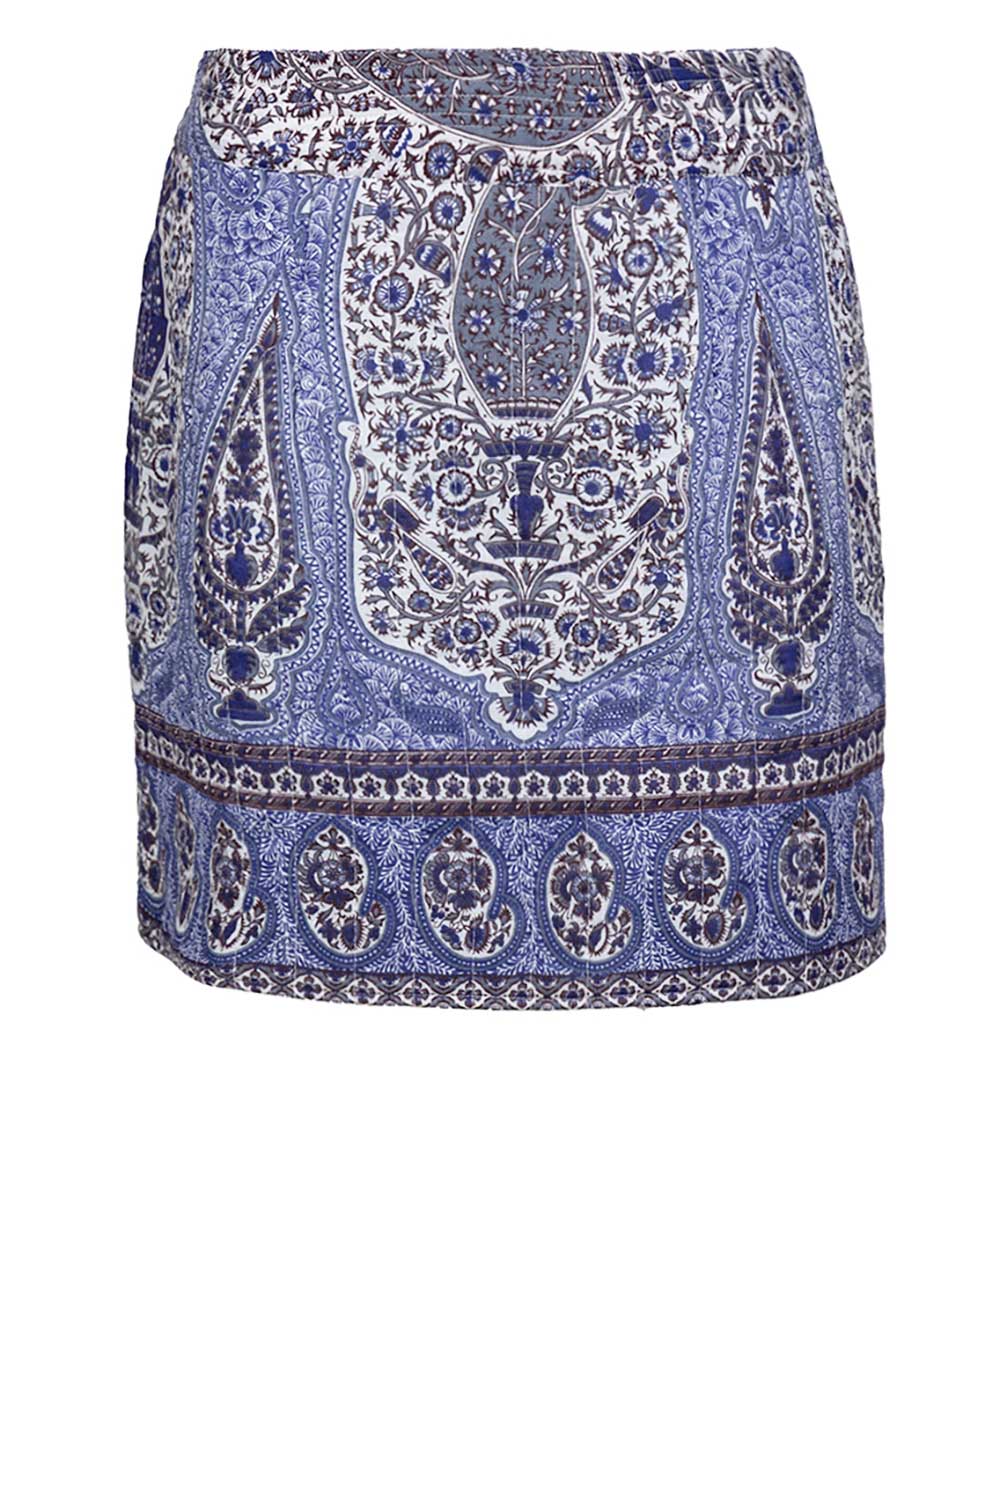 Antik batik Katoenen paisley print rok Tajar blauw